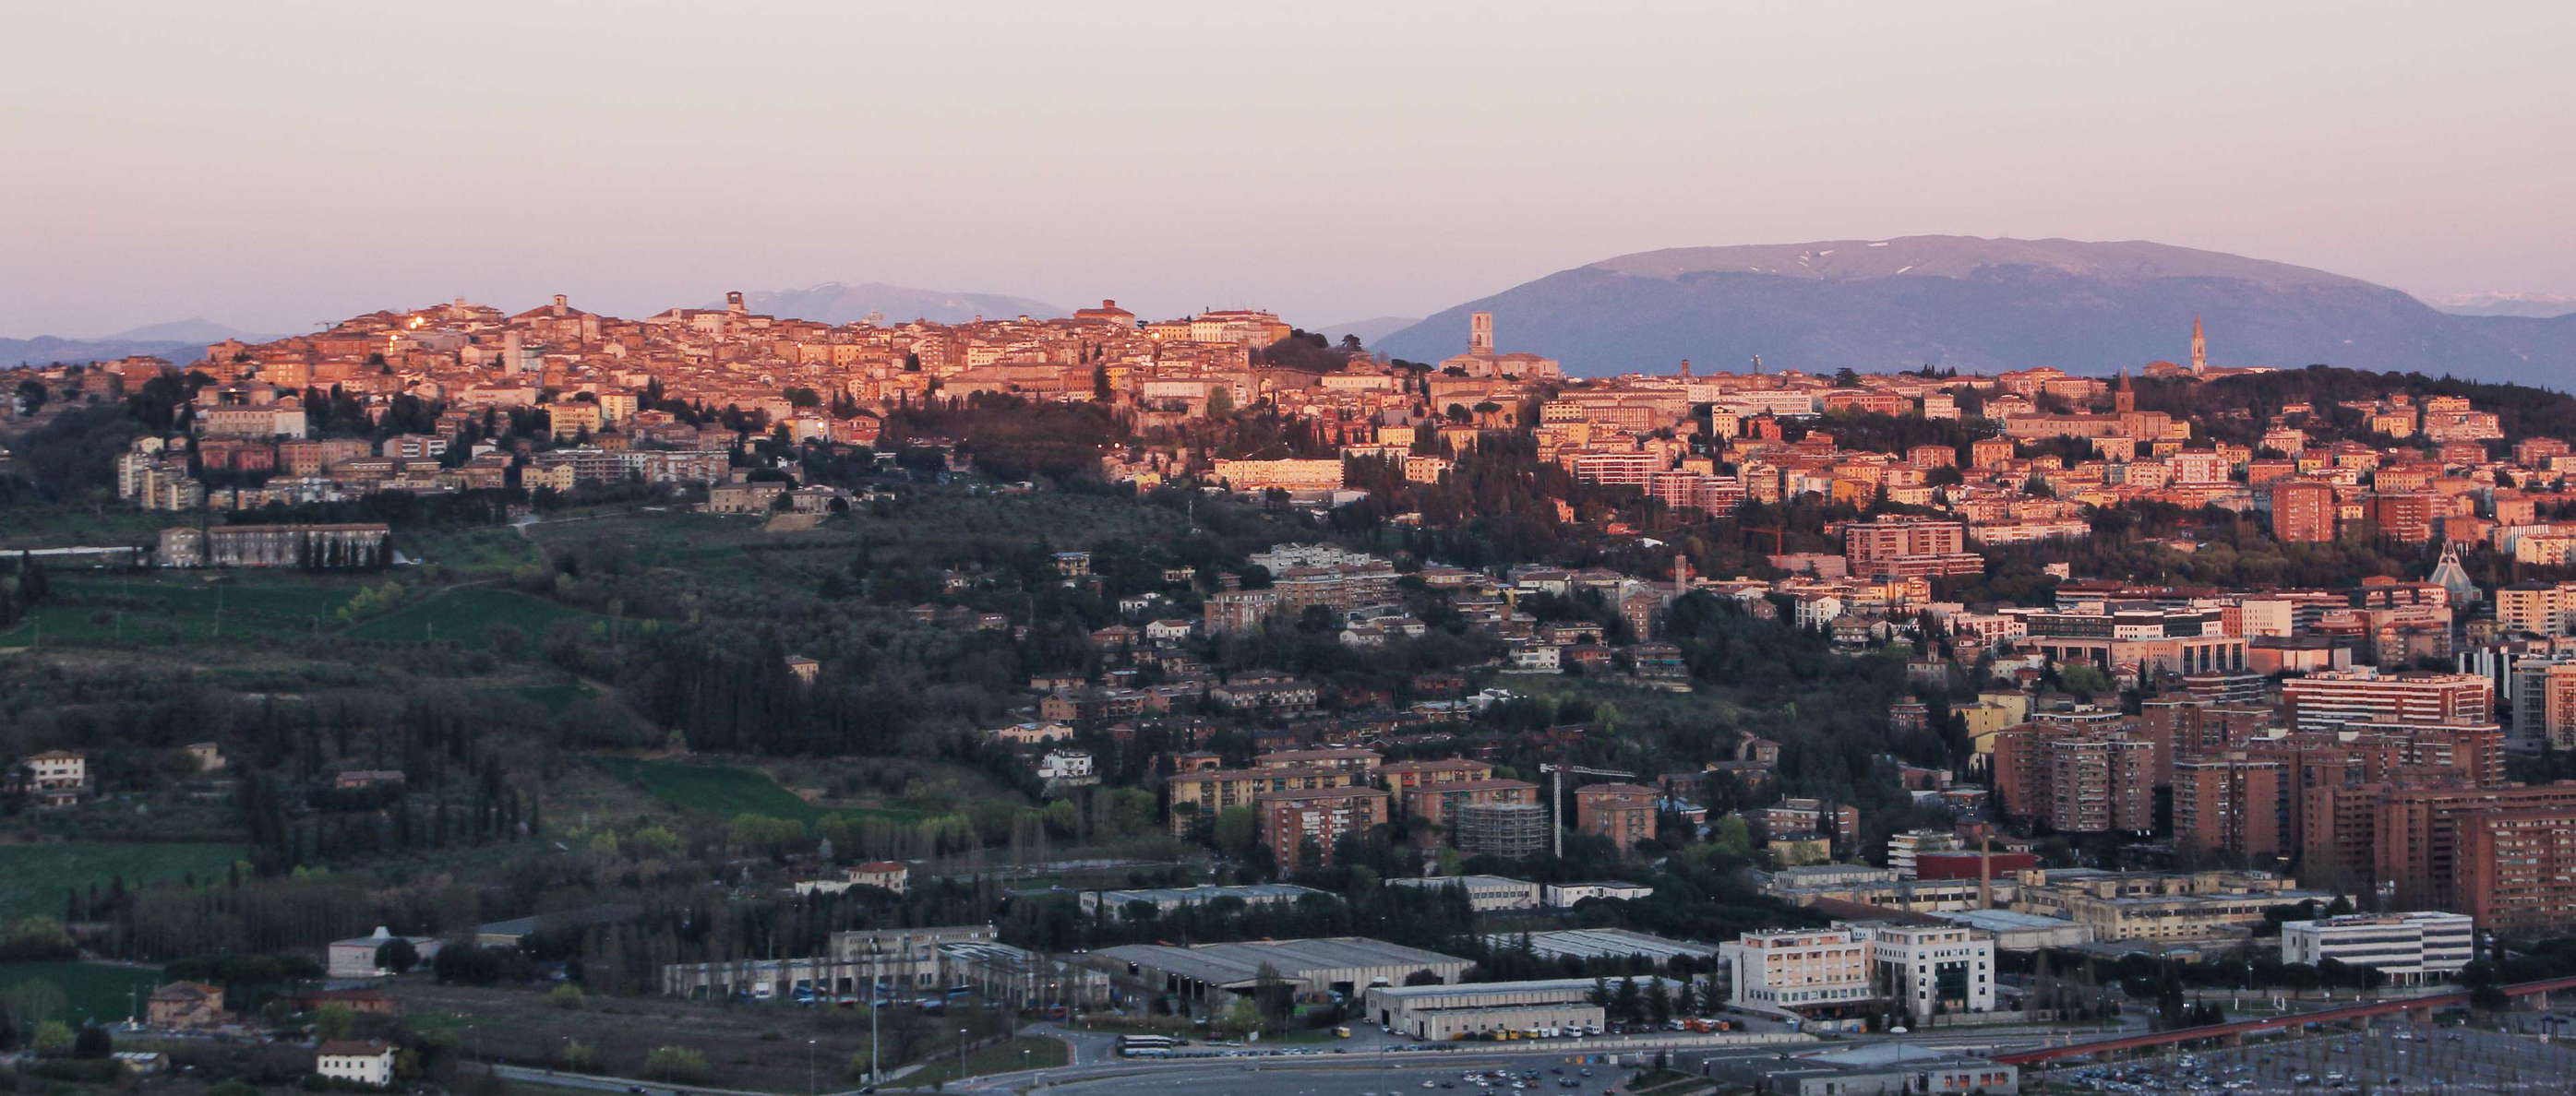 Perugia | Panoramic view